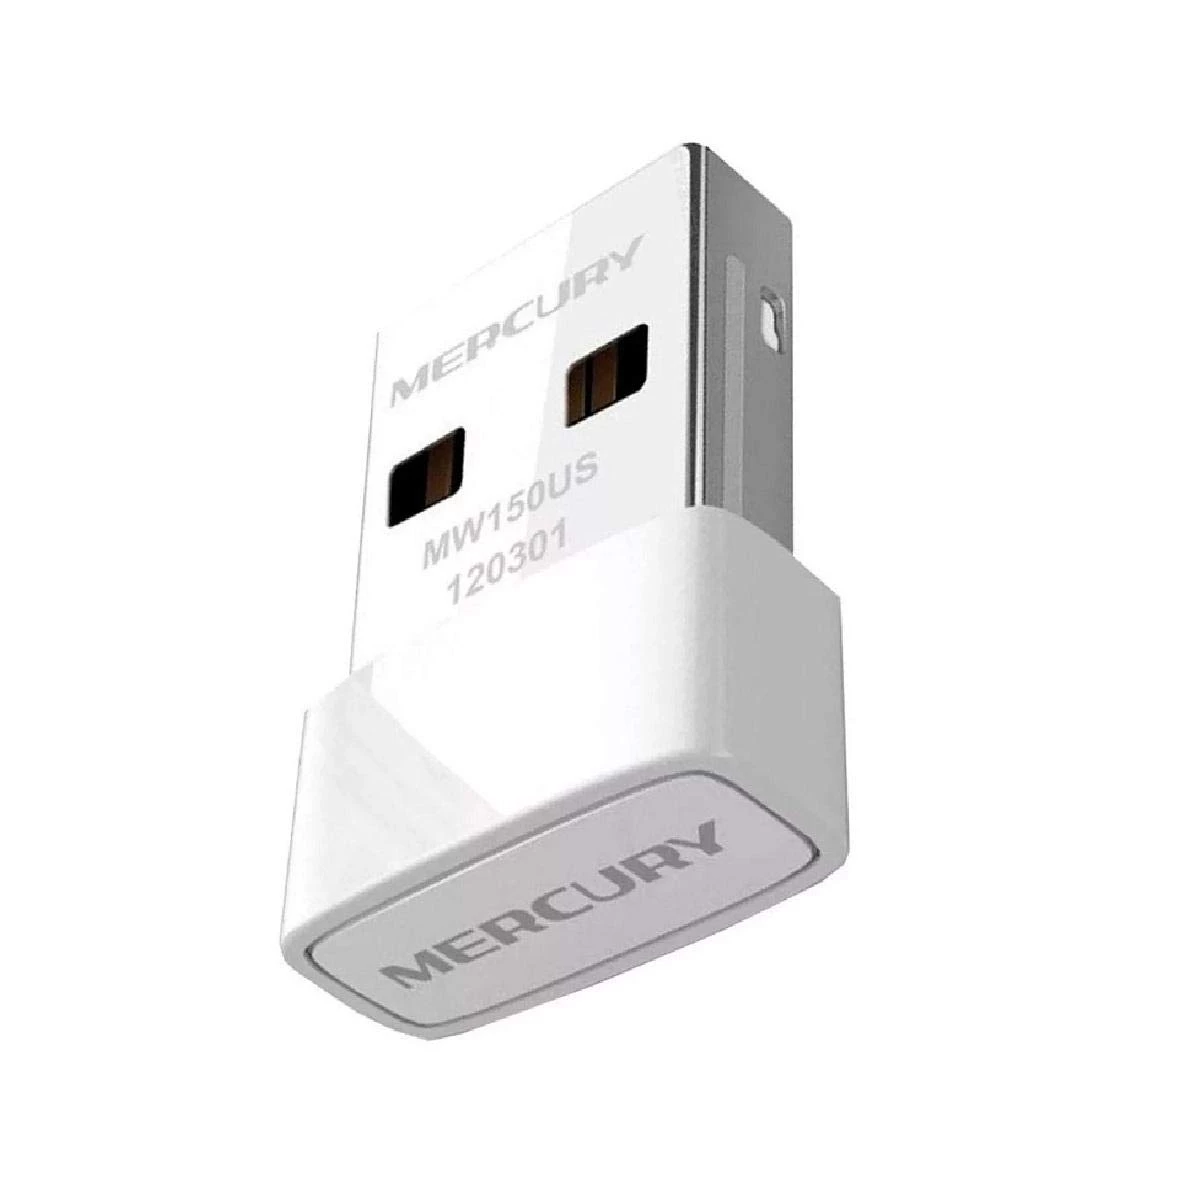 MW150US N150 Wireless Nano USB Adapter, Nano Size, USB 2.0